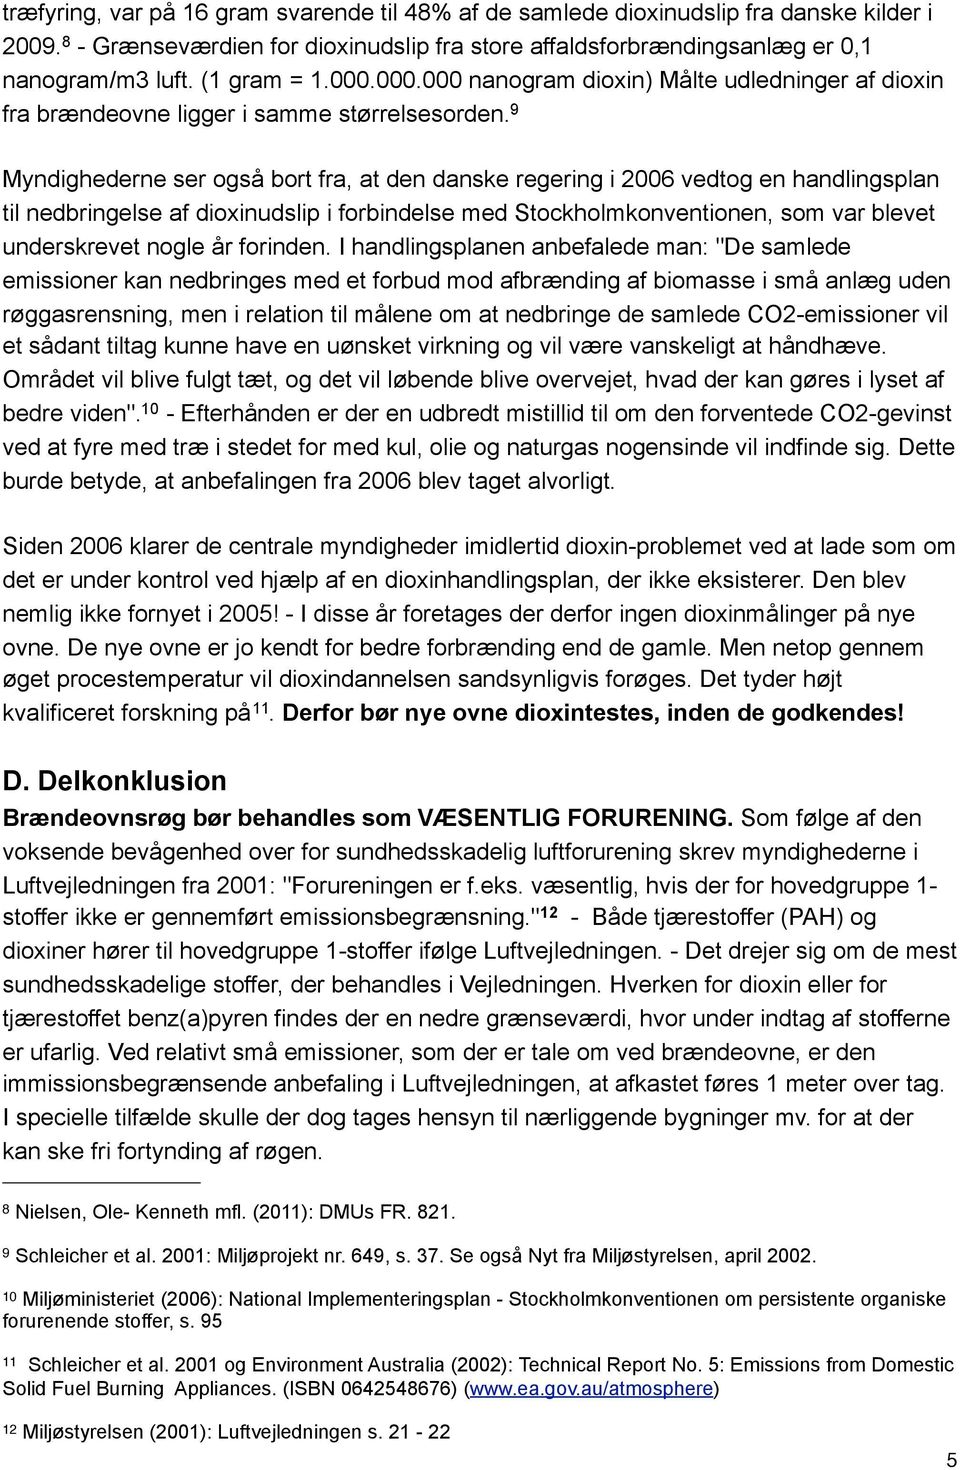 9 Myndighederne ser også bort fra, at den danske regering i 2006 vedtog en handlingsplan til nedbringelse af dioxinudslip i forbindelse med Stockholmkonventionen, som var blevet underskrevet nogle år